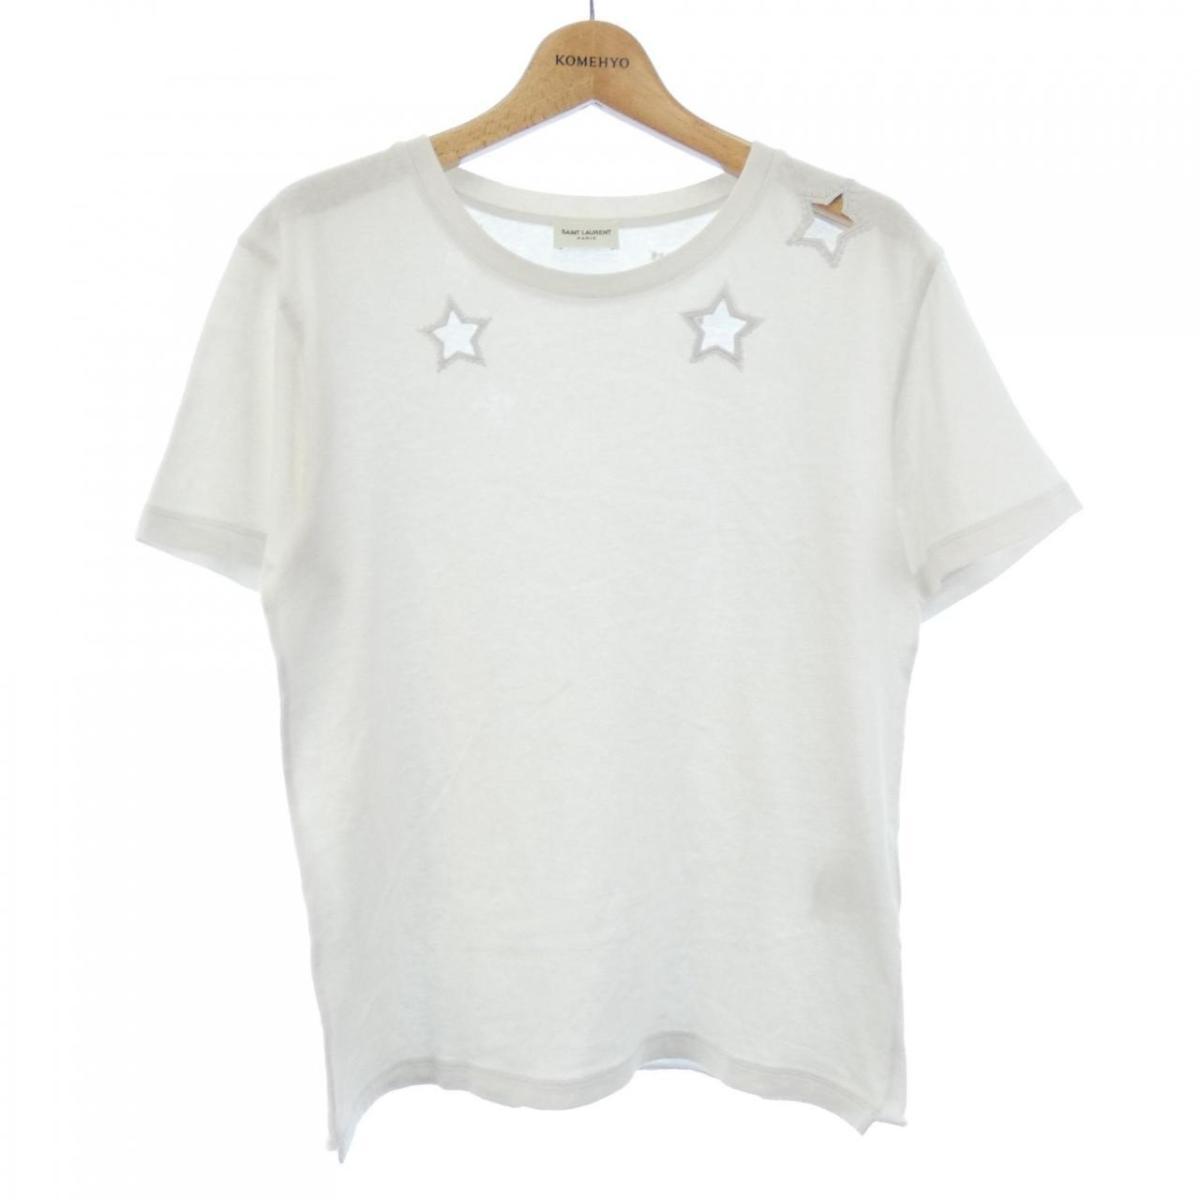 Saint Laurent Tシャツ Tシャツ/カットソー(半袖/袖なし) トップス メンズ 安い売品